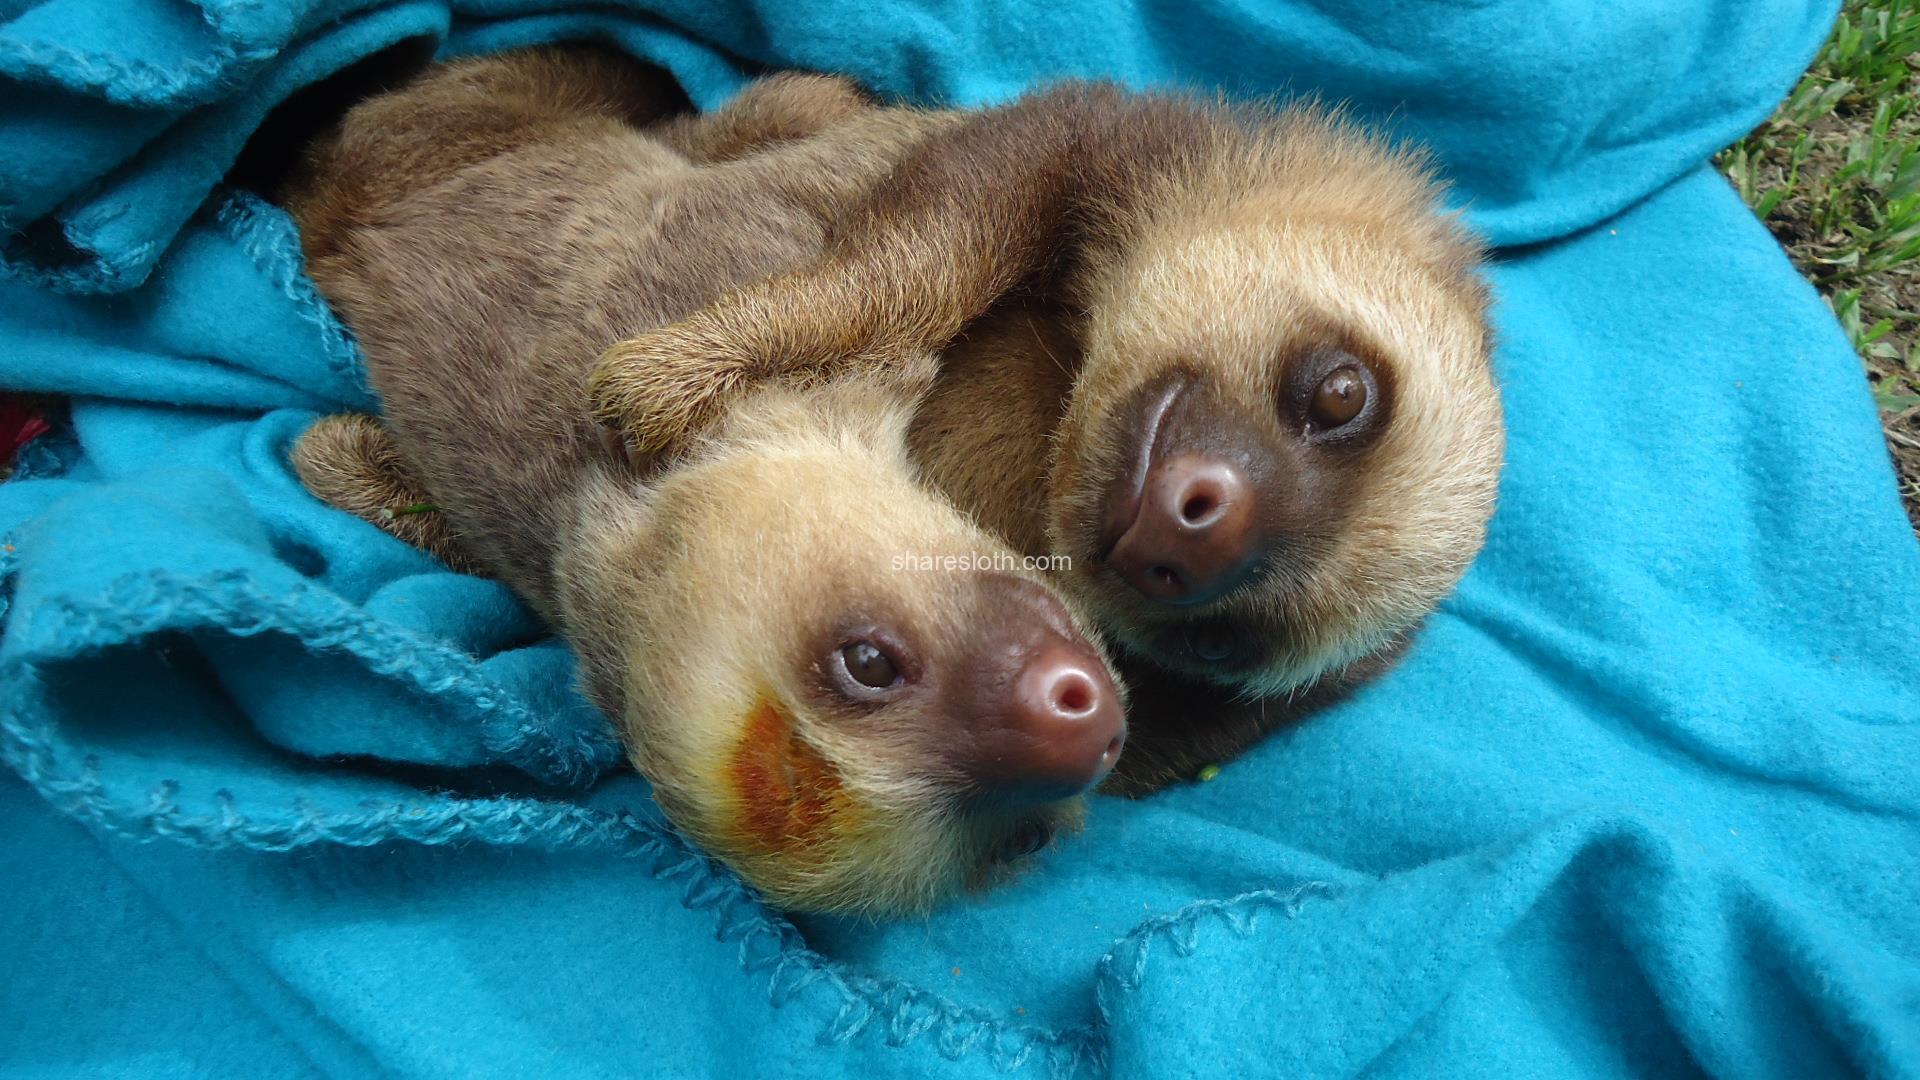 cuddling sloth